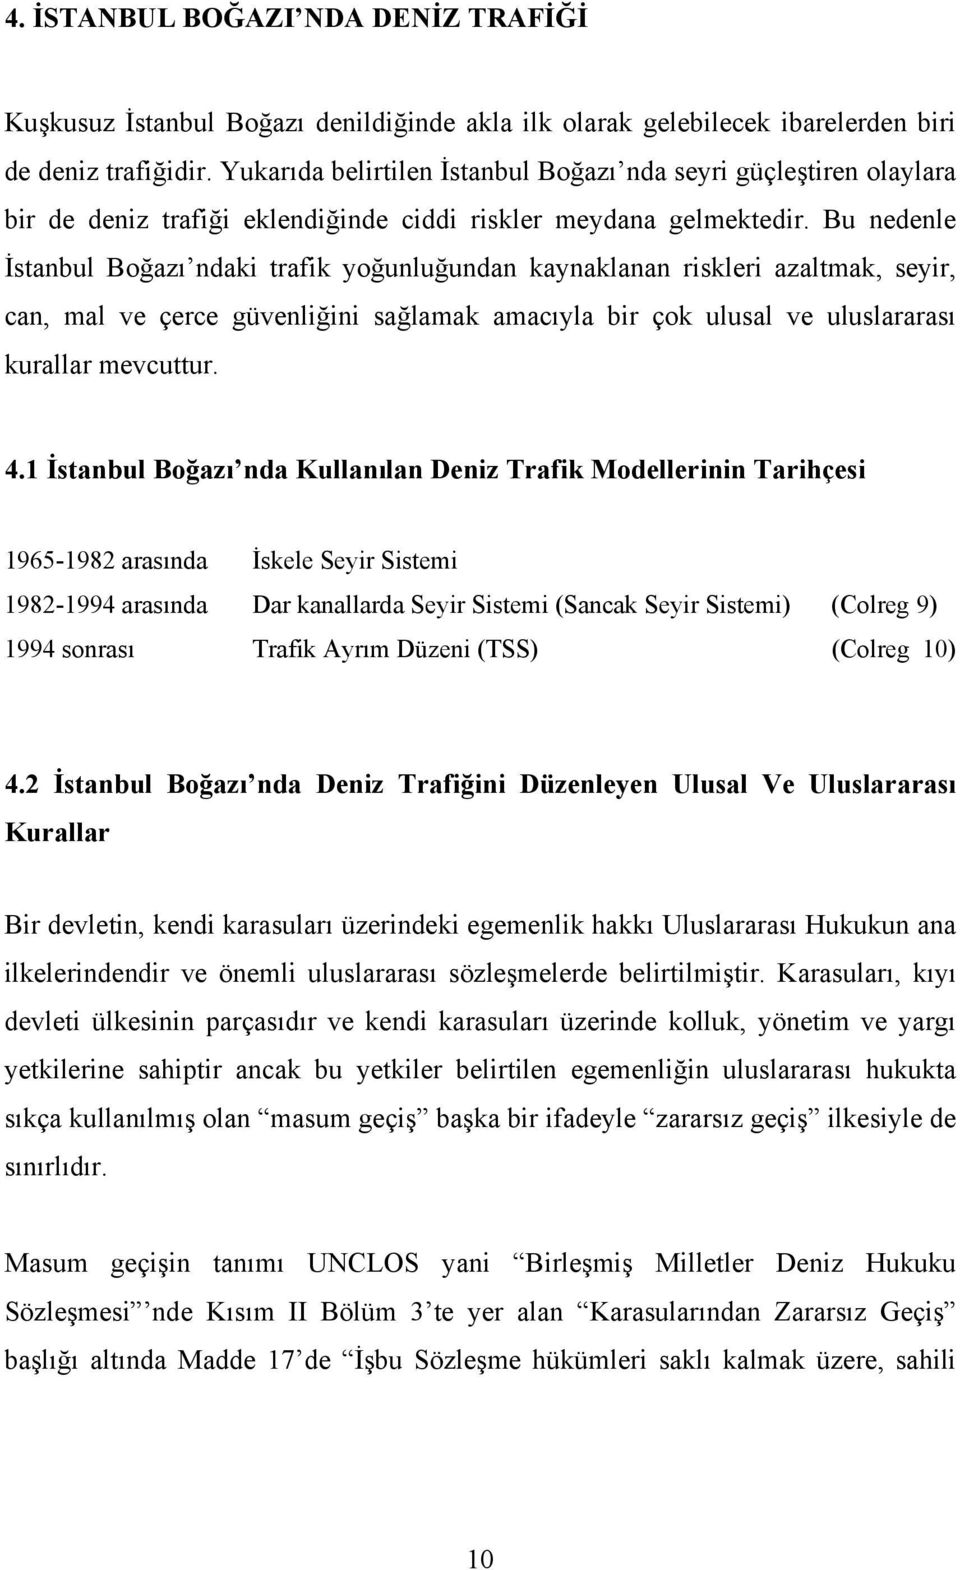 Bu nedenle İstanbul Boğazı ndaki trafik yoğunluğundan kaynaklanan riskleri azaltmak, seyir, can, mal ve çerce güvenliğini sağlamak amacıyla bir çok ulusal ve uluslararası kurallar mevcuttur. 4.